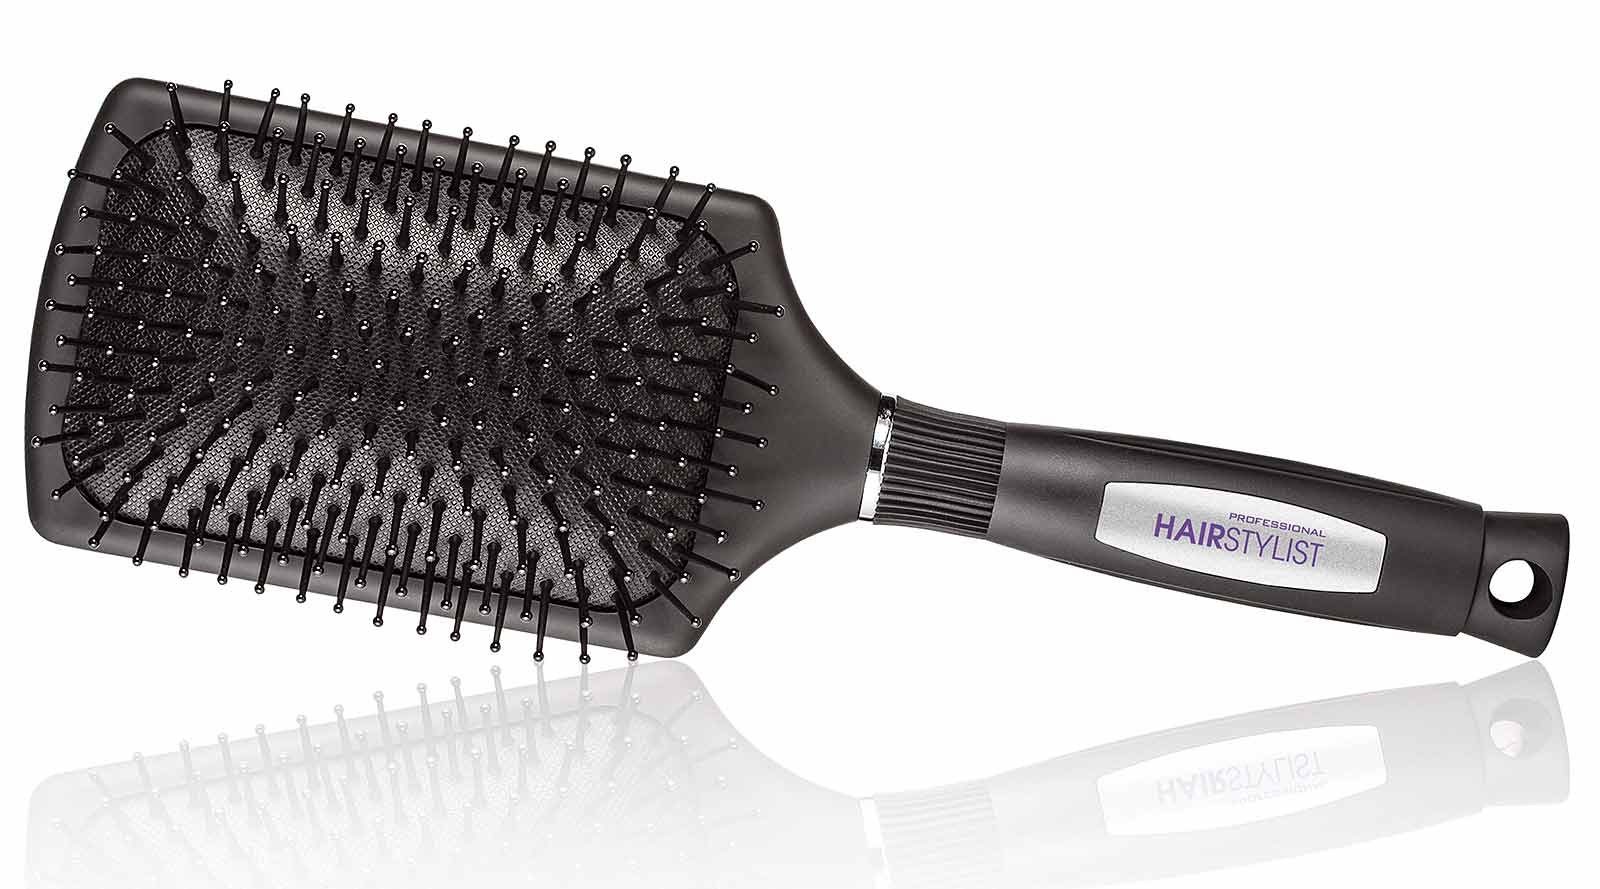 Kosmetex Haarbürste | Haarbürsten